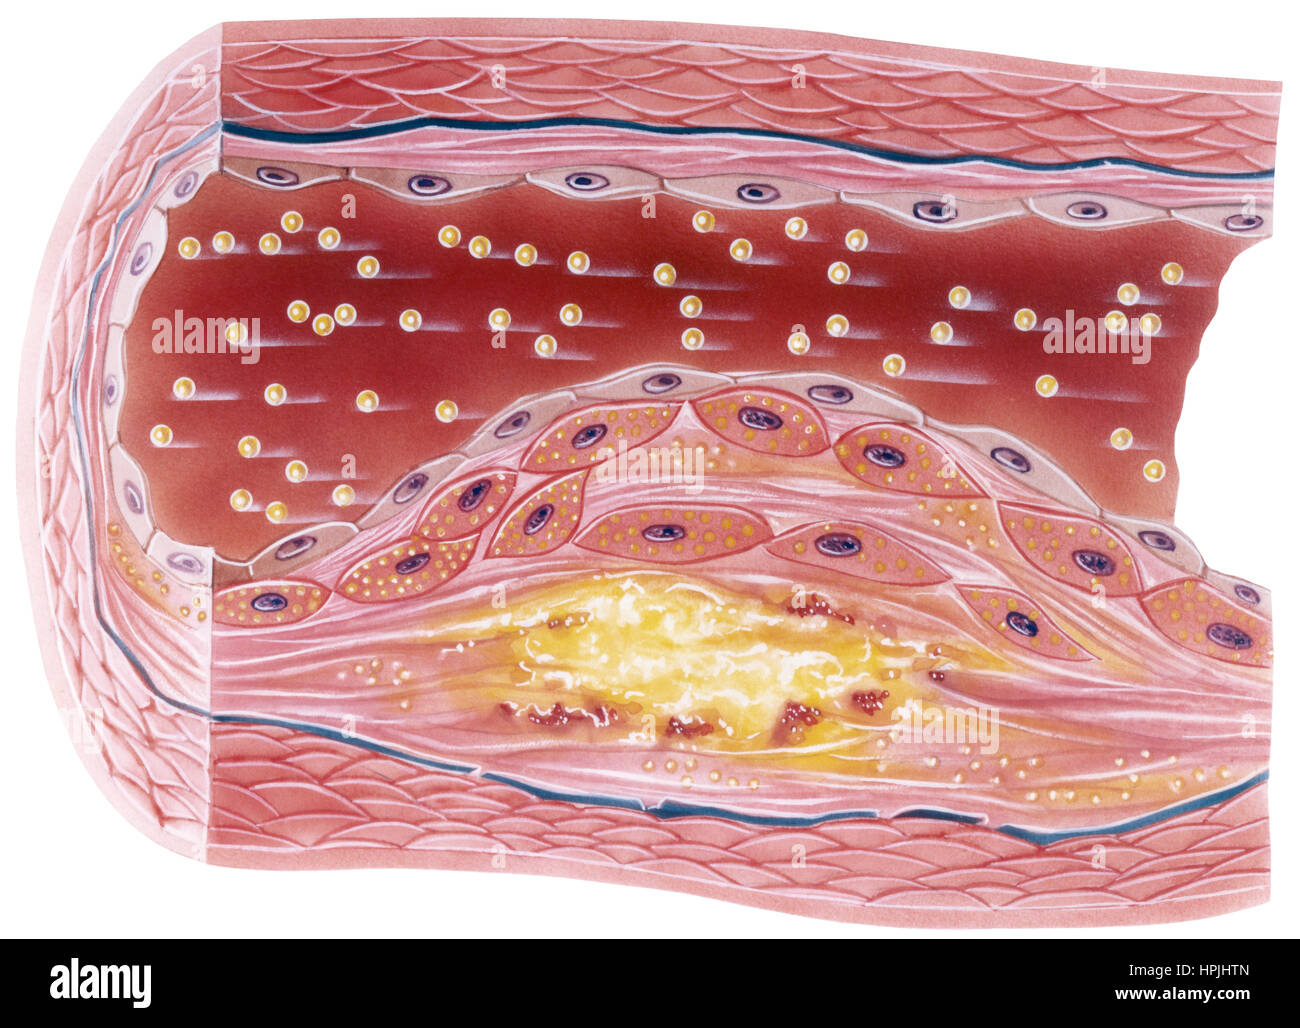 L'athérosclérose vasculaire montrant une vue en coupe de la plaque accumulée dans un malheureux vaisseau sanguin. Cette condition est tout à fait évitable et reversabl Banque D'Images